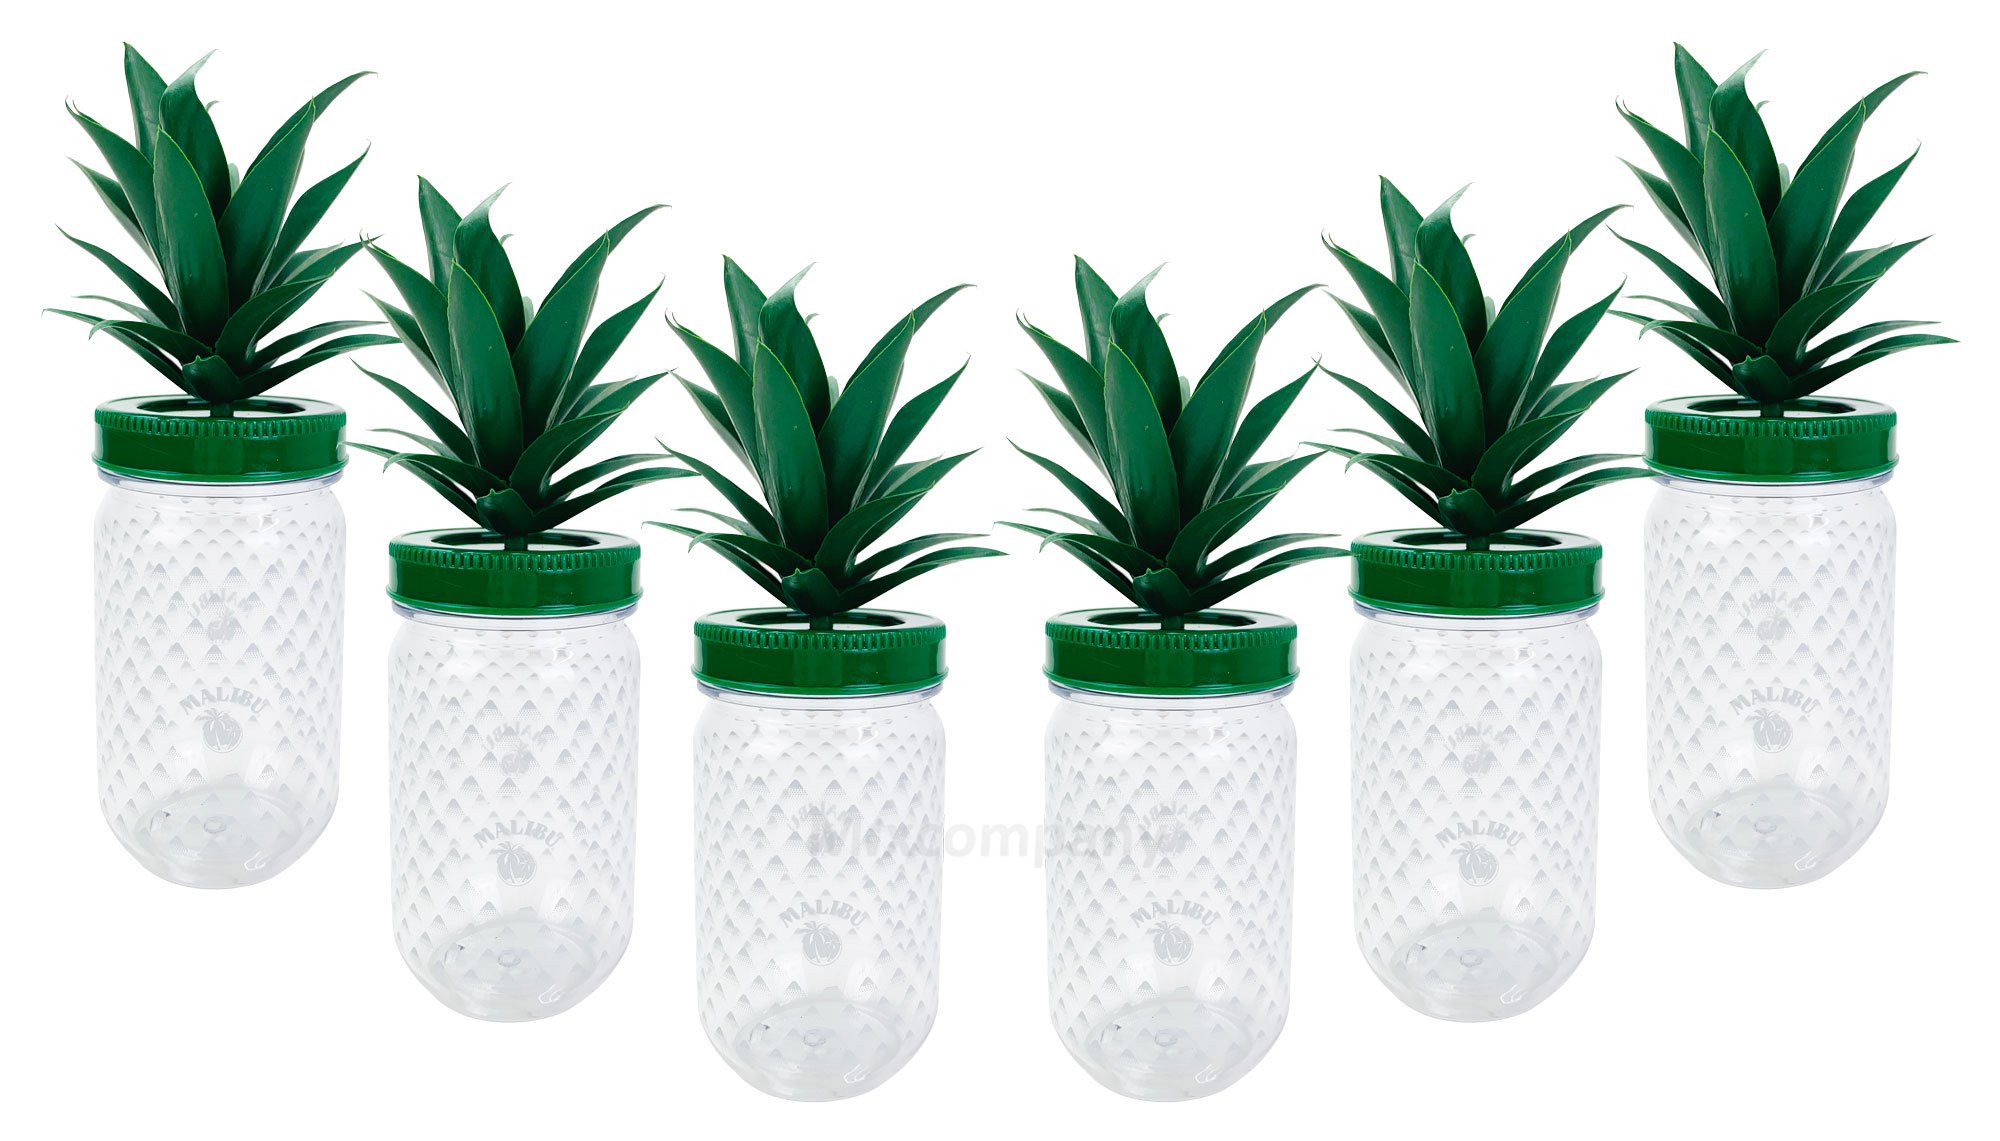 Malibu Cocktail Becher Set aus Kunststoff ananasform grün ca. 0,3l 300ml - 6 Stück Mehrweg Trinkbecher Cocktailbecher Ananas Glas Gläser